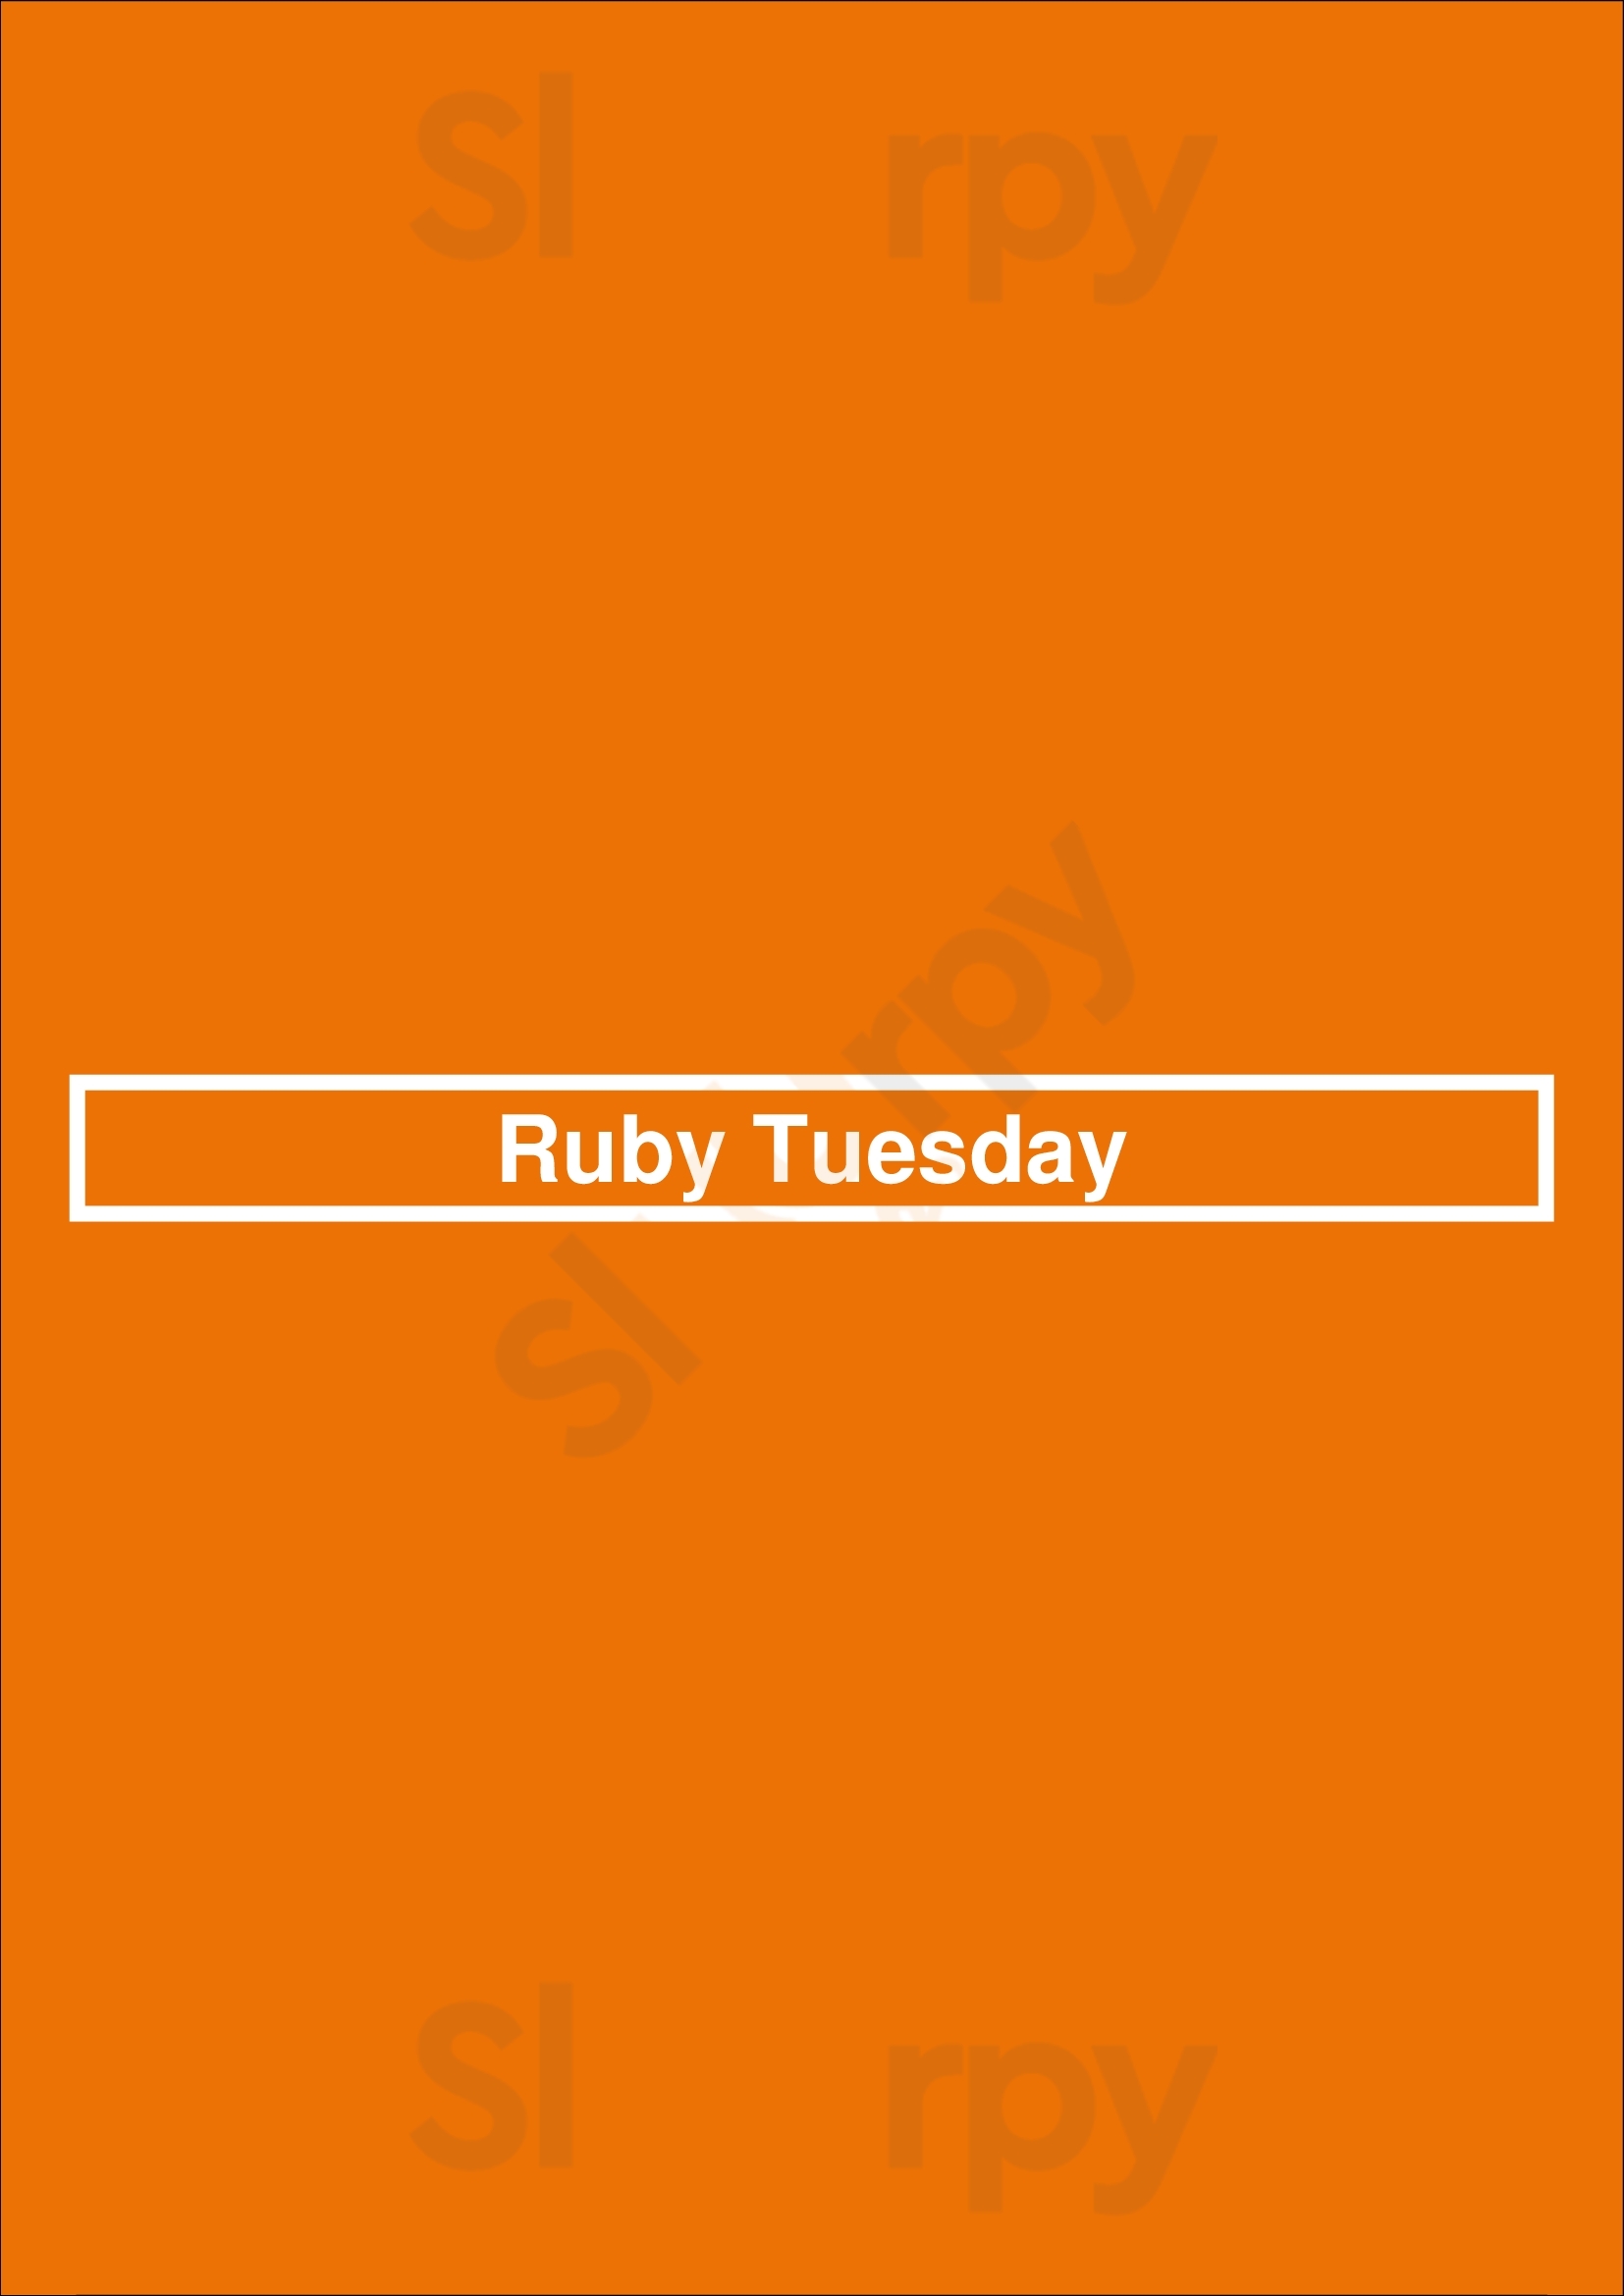 Ruby Tuesday DeWitt Menu - 1